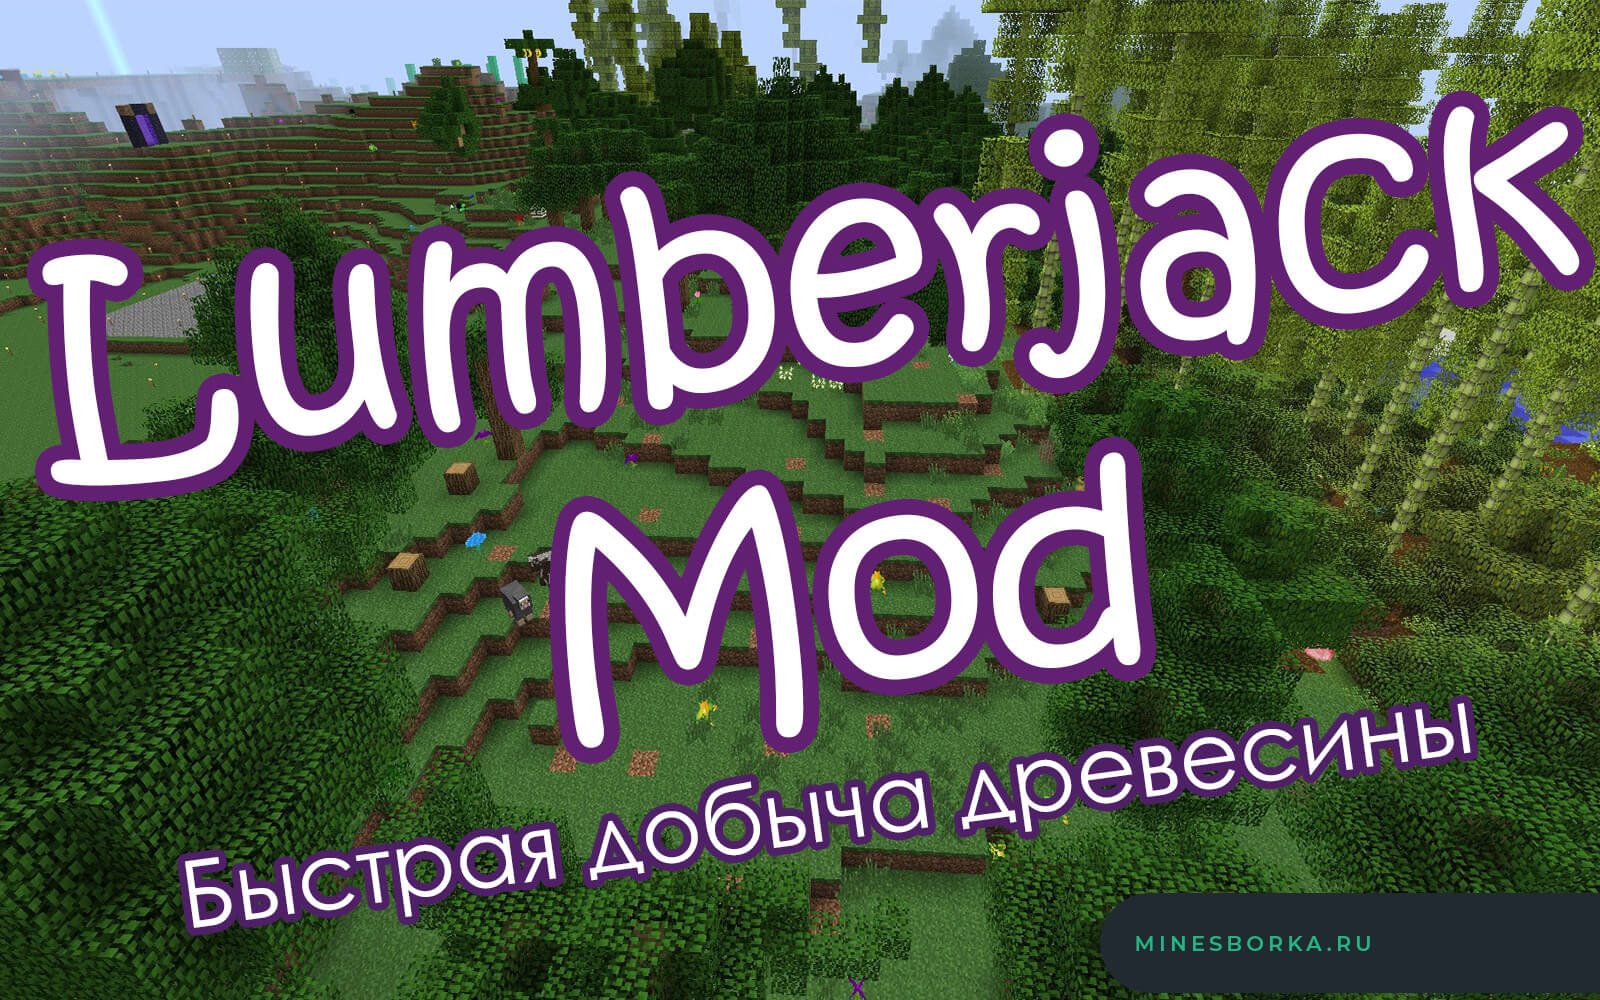 Скачать мод Lumberjack Mod для майнкрафт | Быстрая добыча древесины